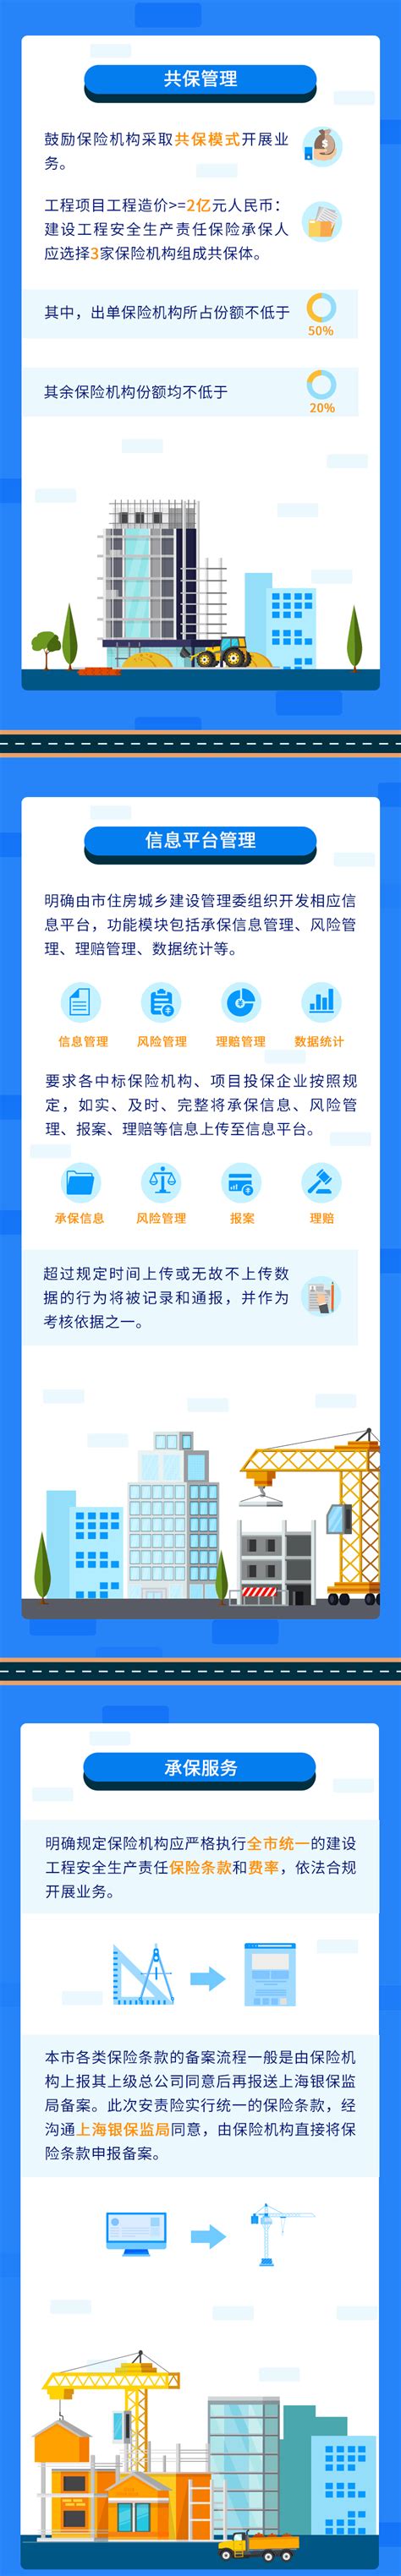 上海市建设工程信息网